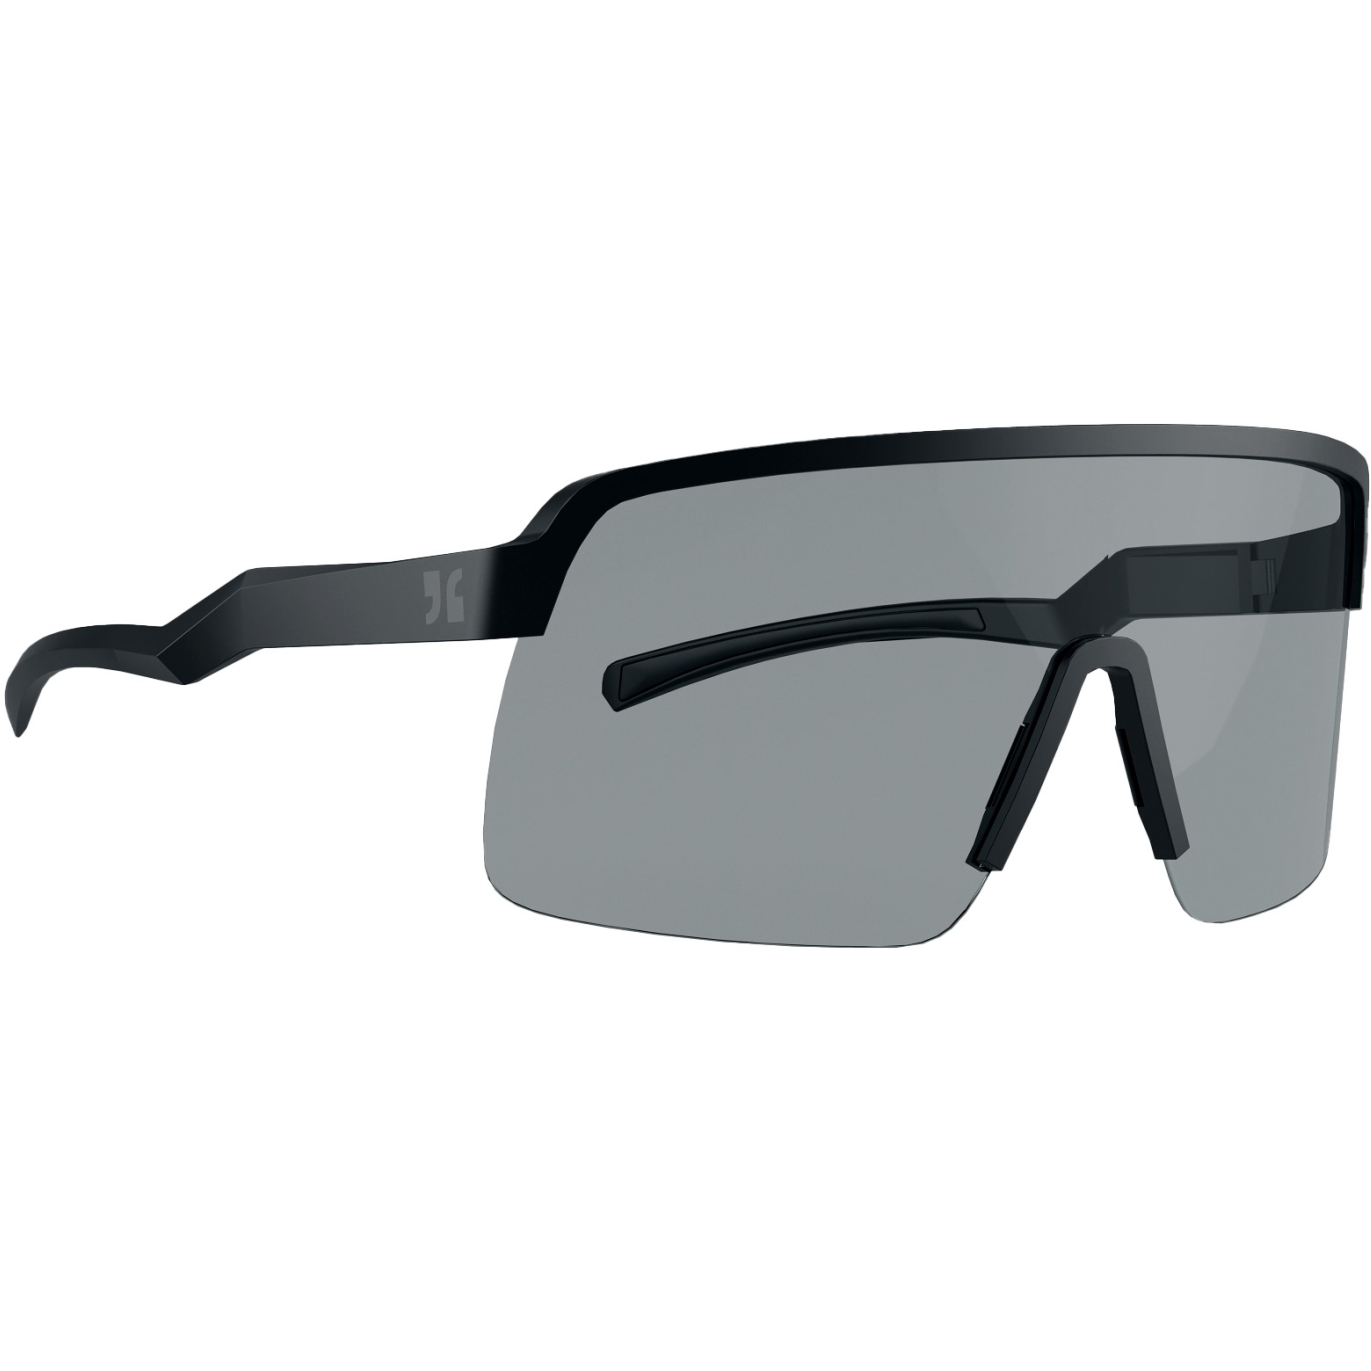 Produktbild von Dirtlej Specs 02 Bike Sonnenbrille - Photochromic - schwarz